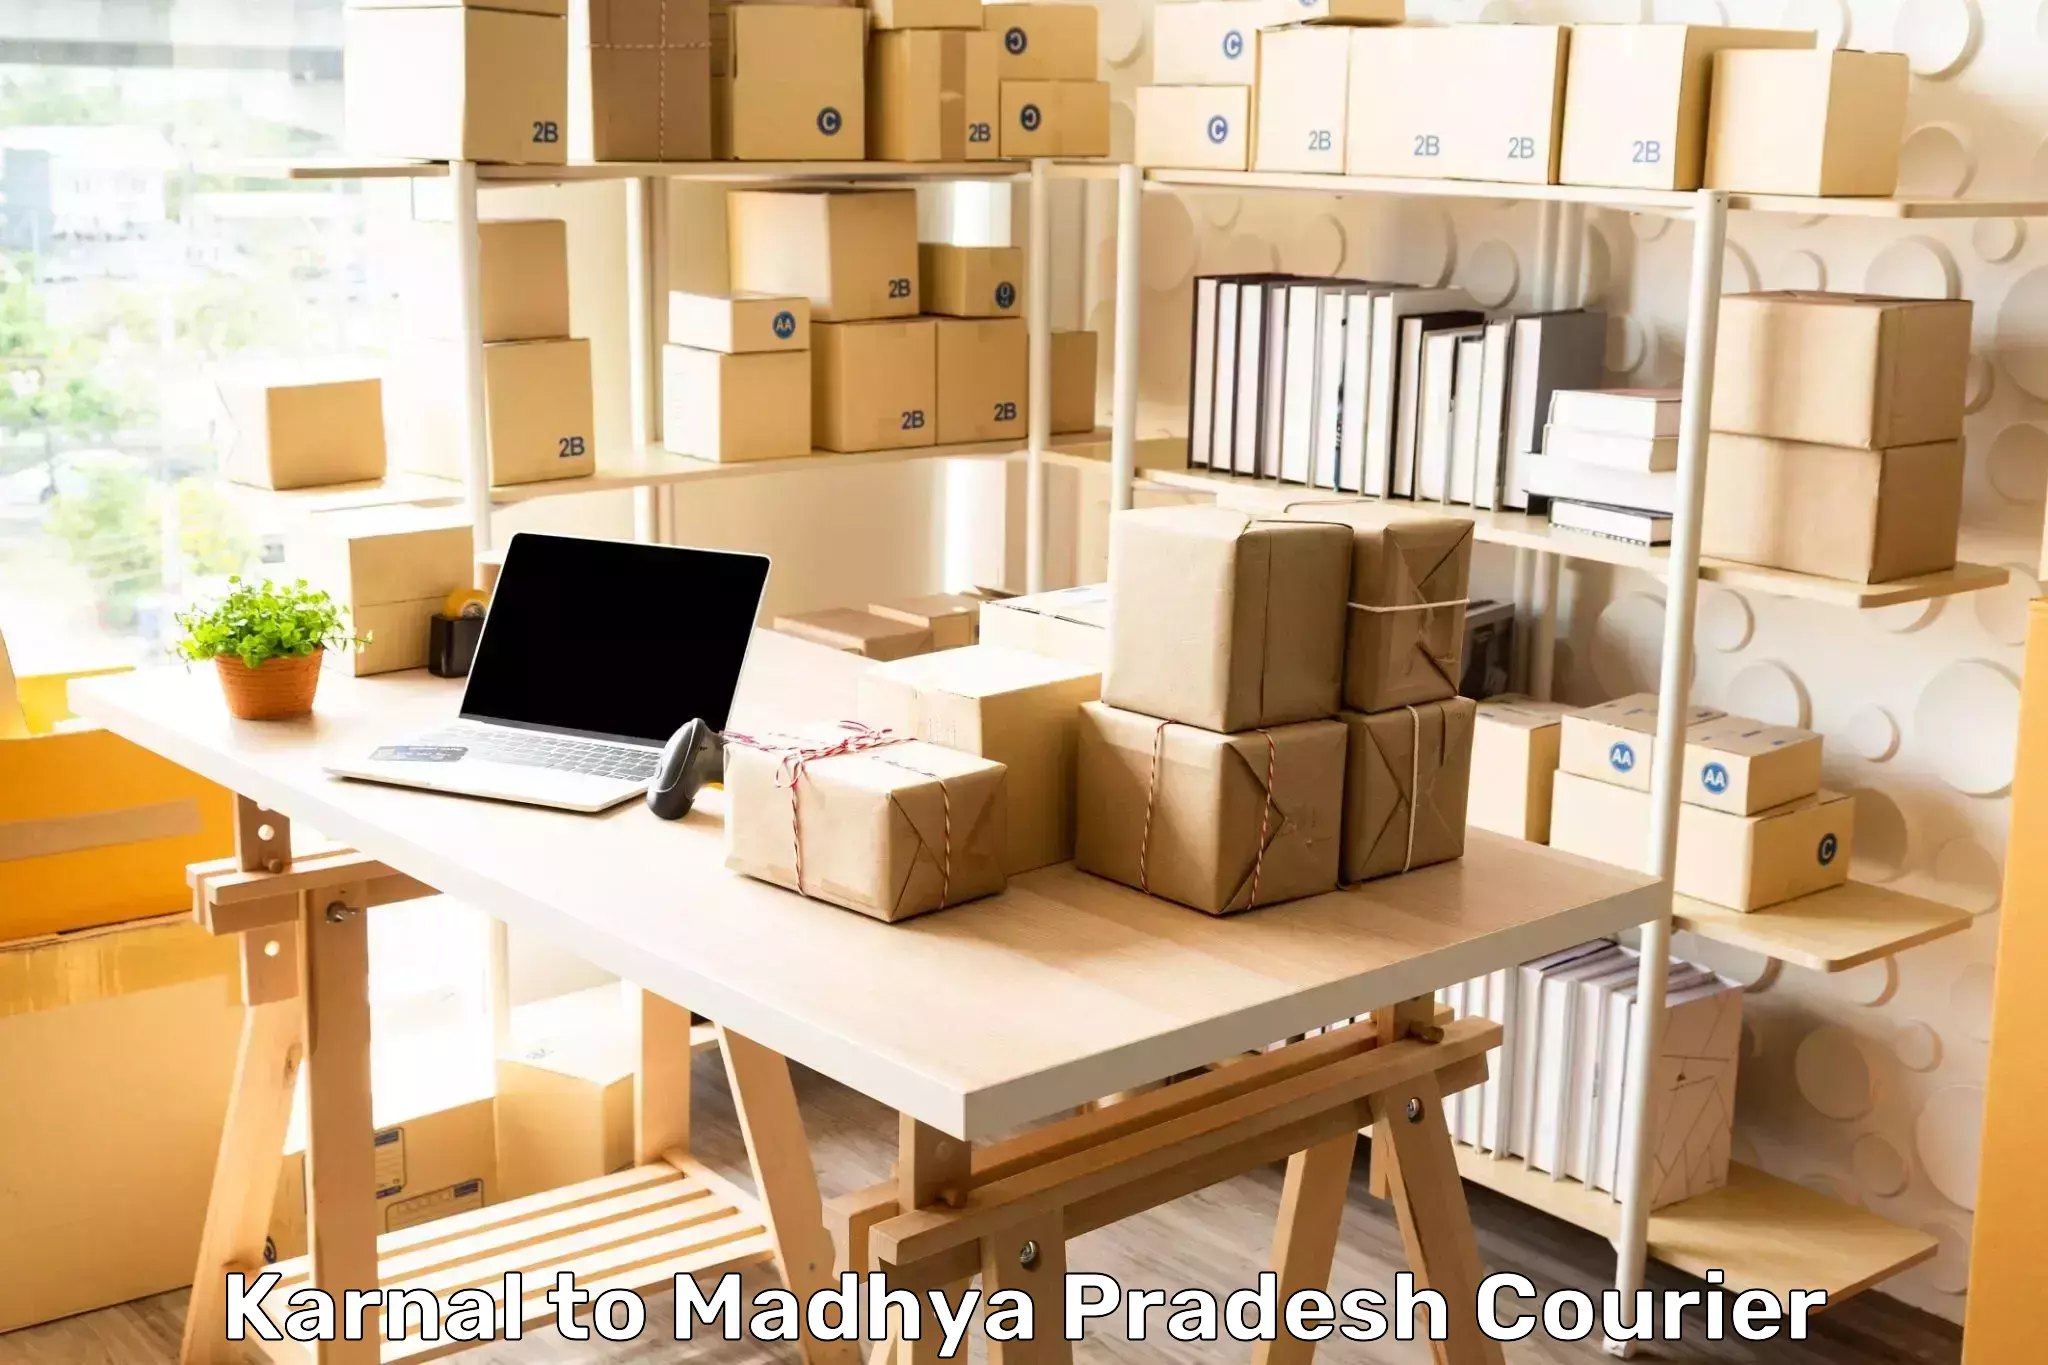 Professional parcel services Karnal to Nagda